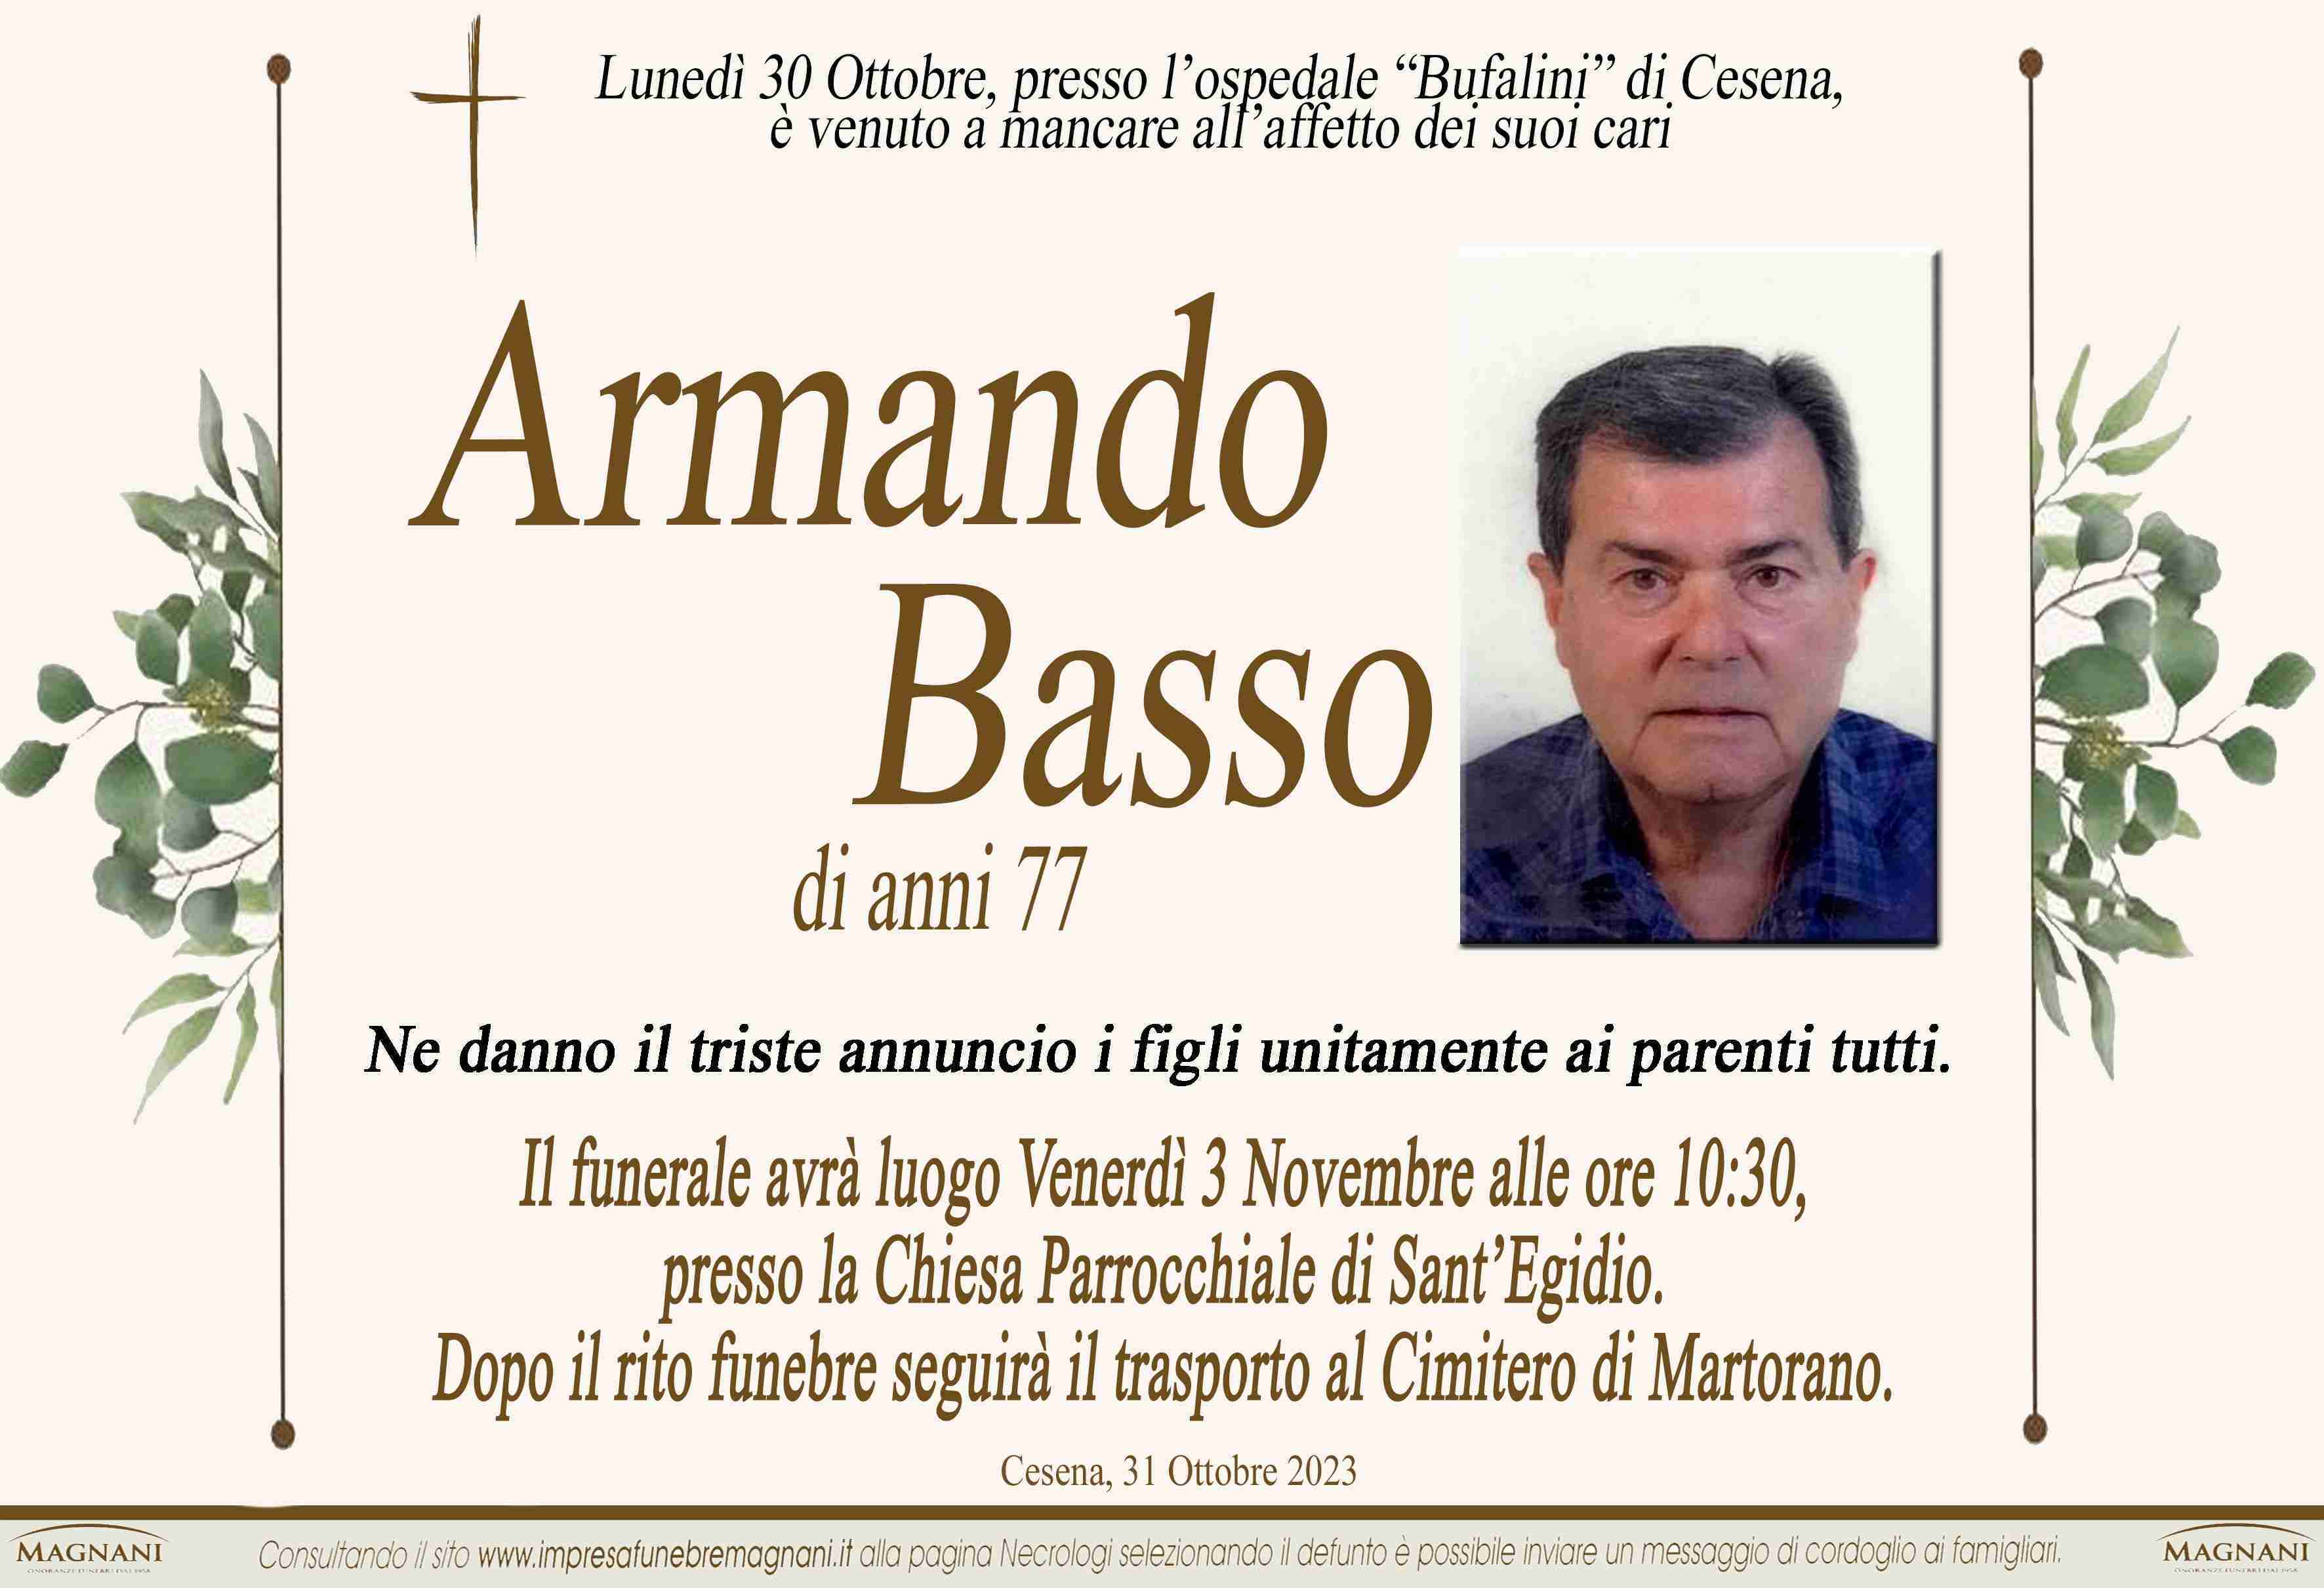 Armando Basso